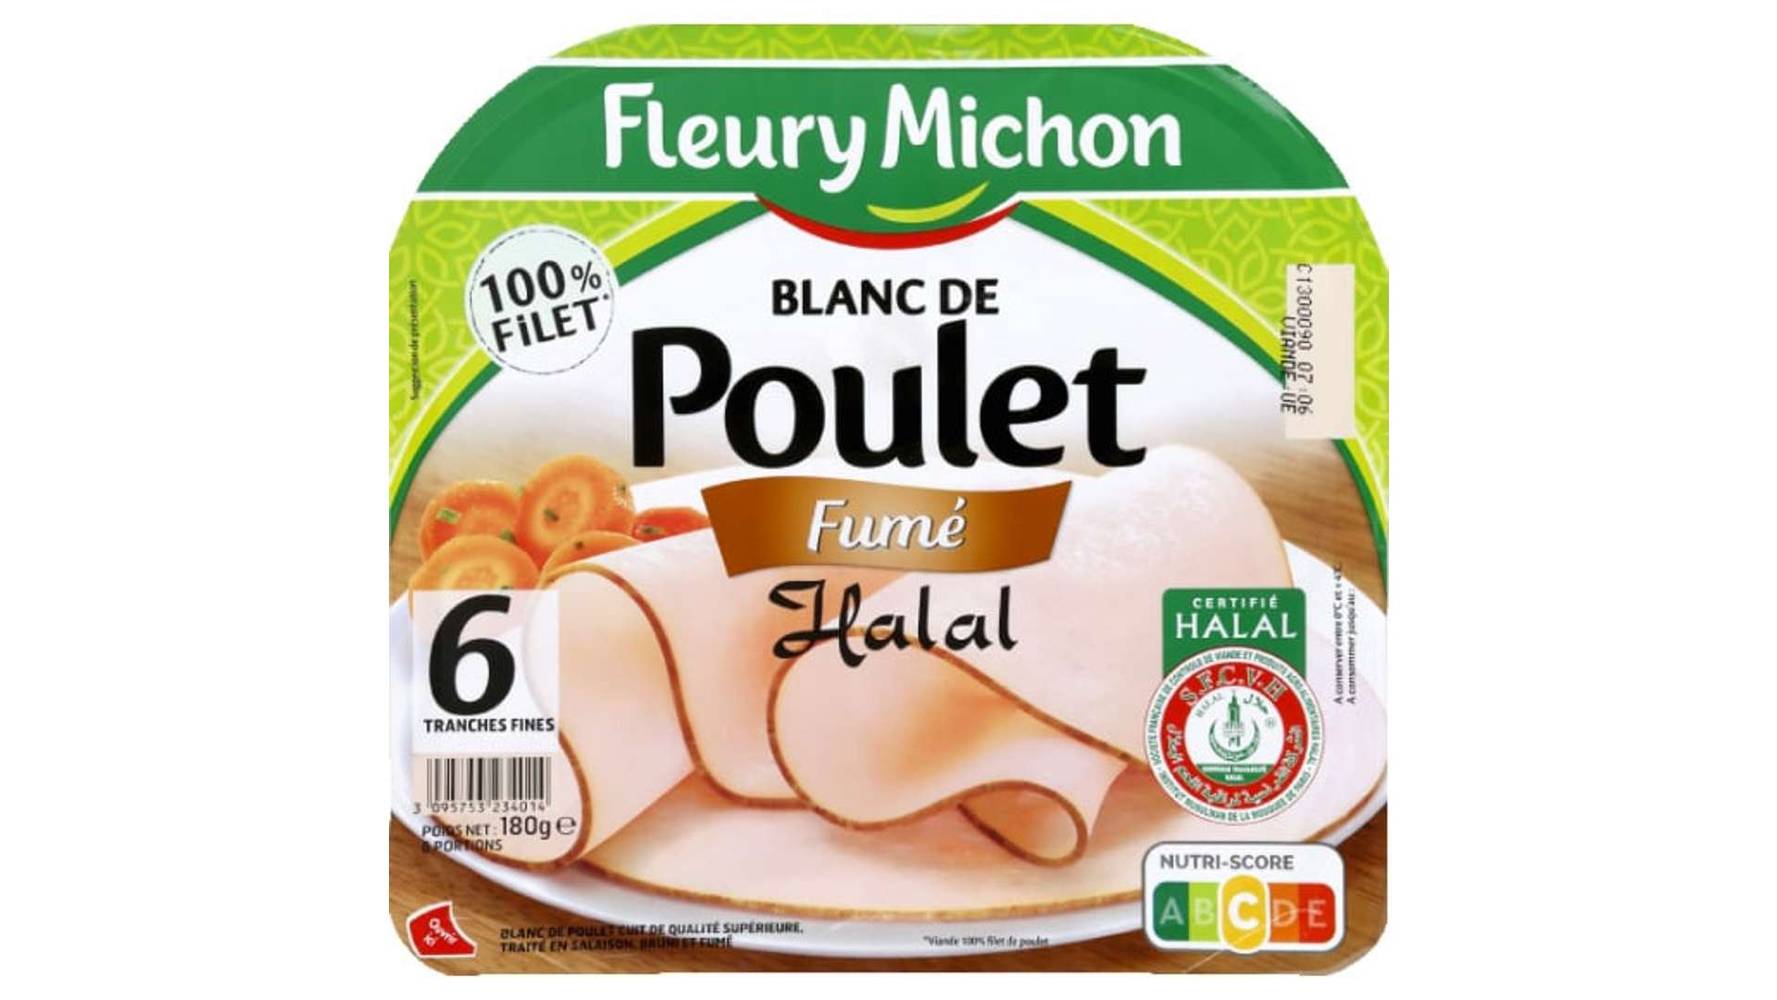 Fleury Michon - Blanc de poulet fumé tranches fines halal